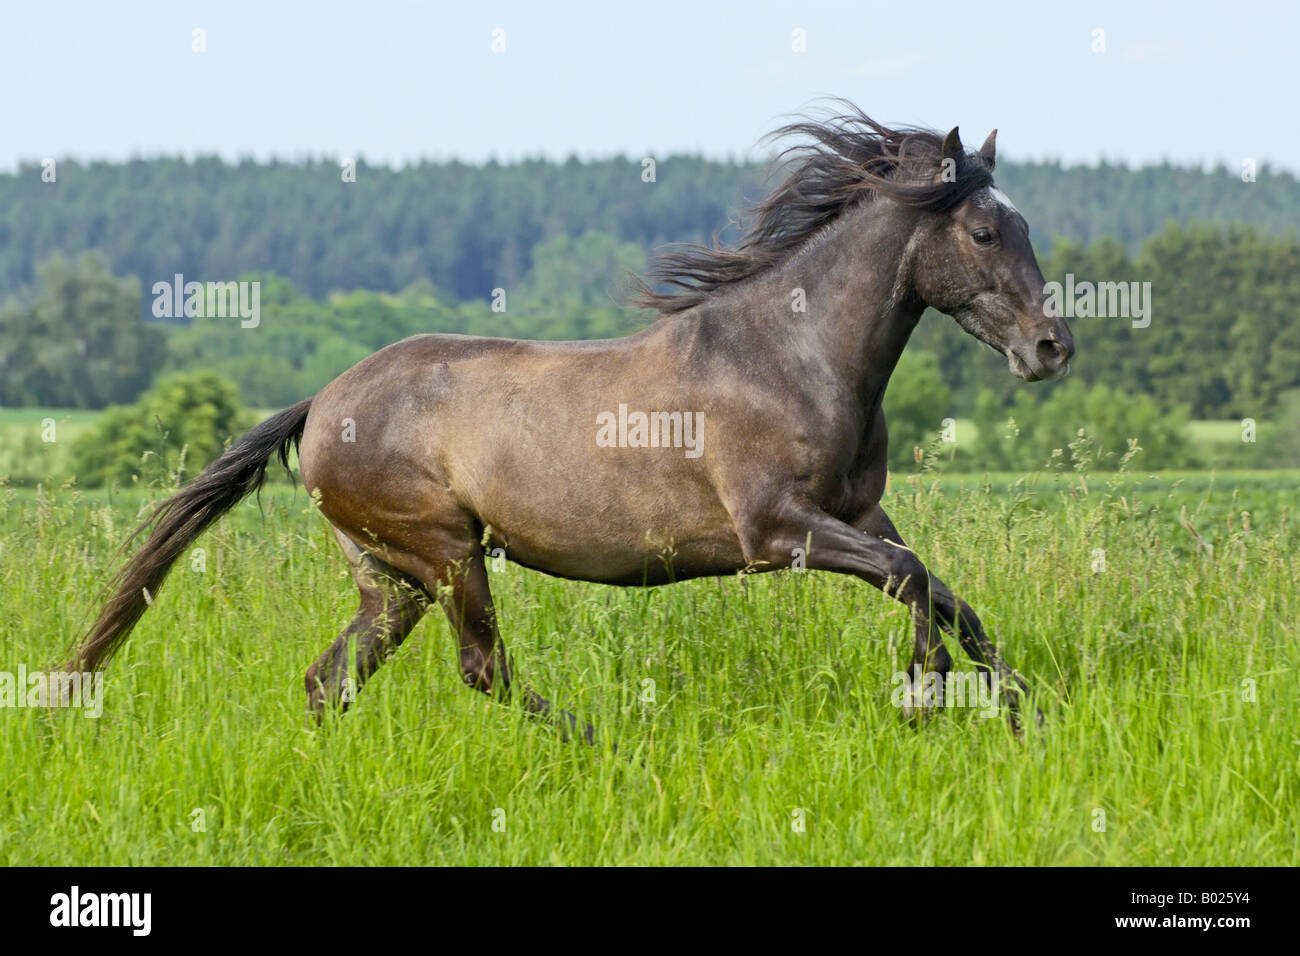 Galloping Paso Fino horse mare Stock Photo